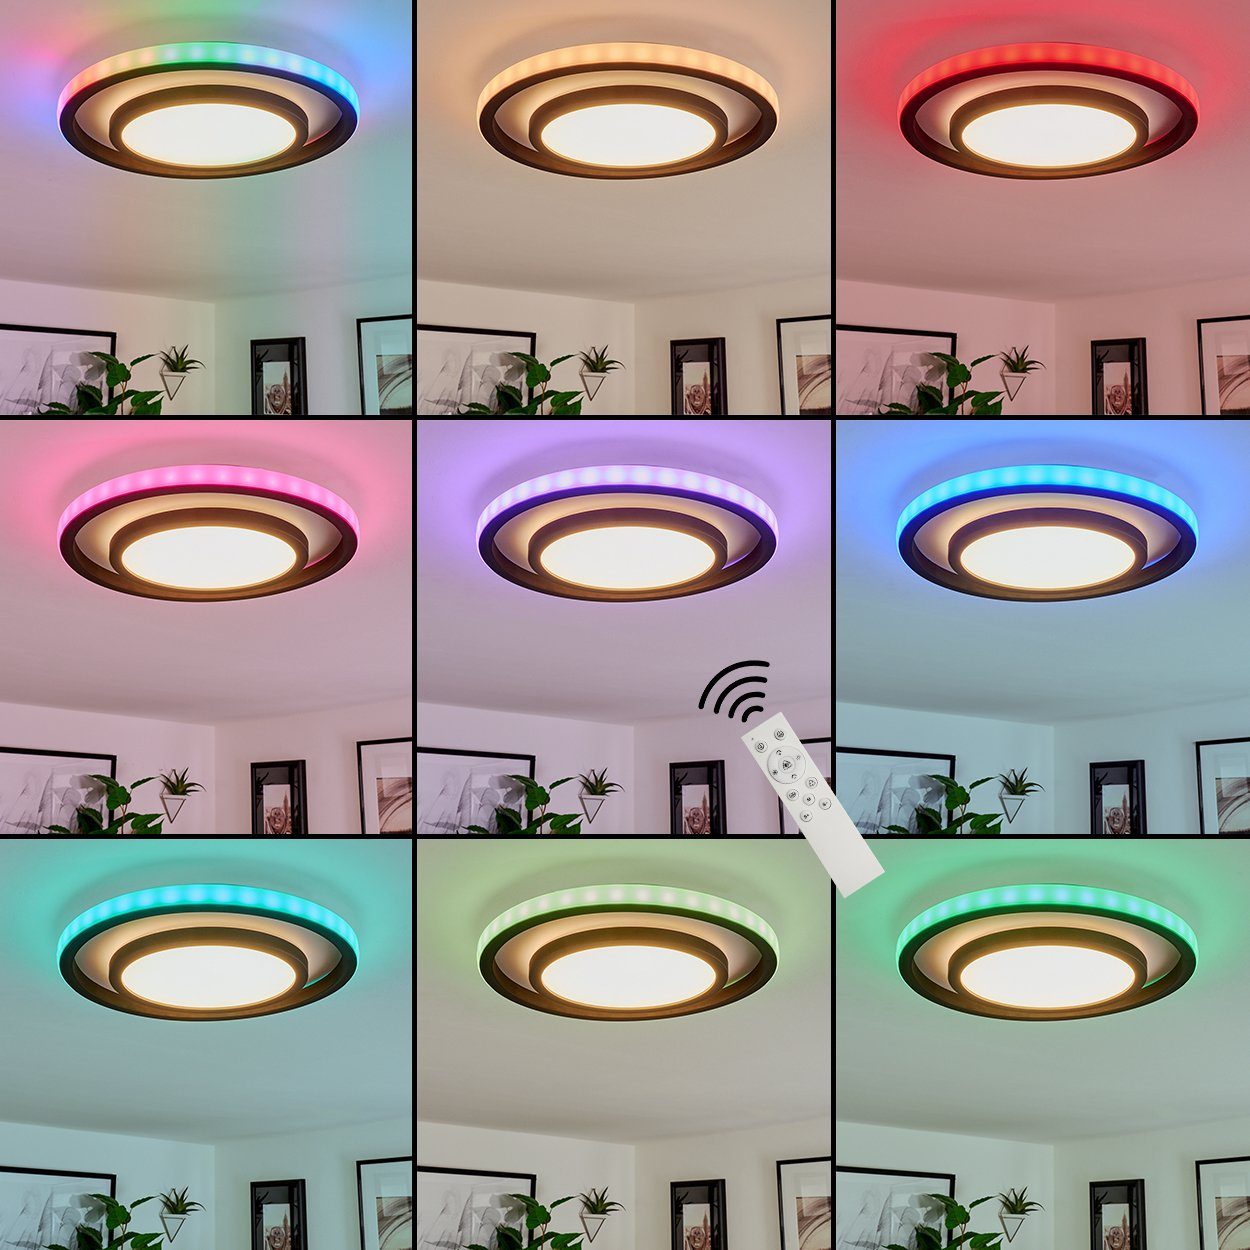 dimmbar, Deckenleuchte LED hofstein Fernbedienung, in 6500 Kelvin, aus Nachtlicht Schwarz/Weiß, Farbwechsel, Lichteffekt, »Candoglia« Metall/Kunststoff RGB Deckenlampe